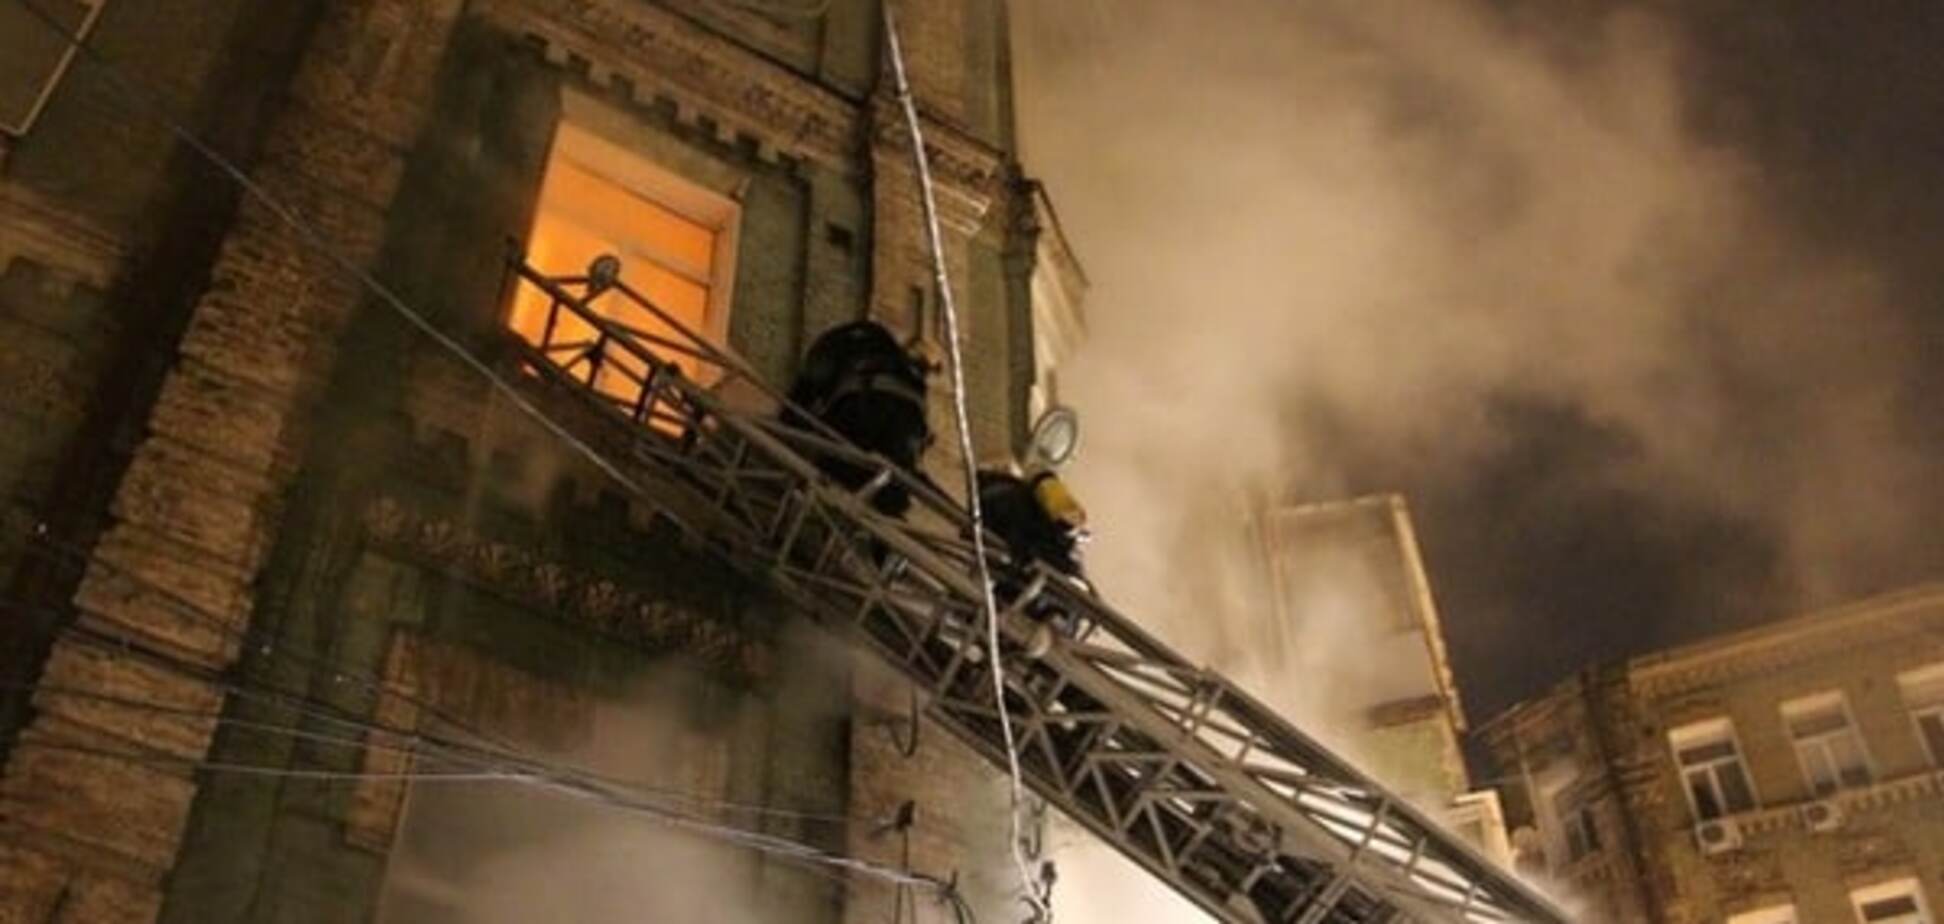 Вночі в центрі Києва виникла пожежа і прогримів вибух: є жертви